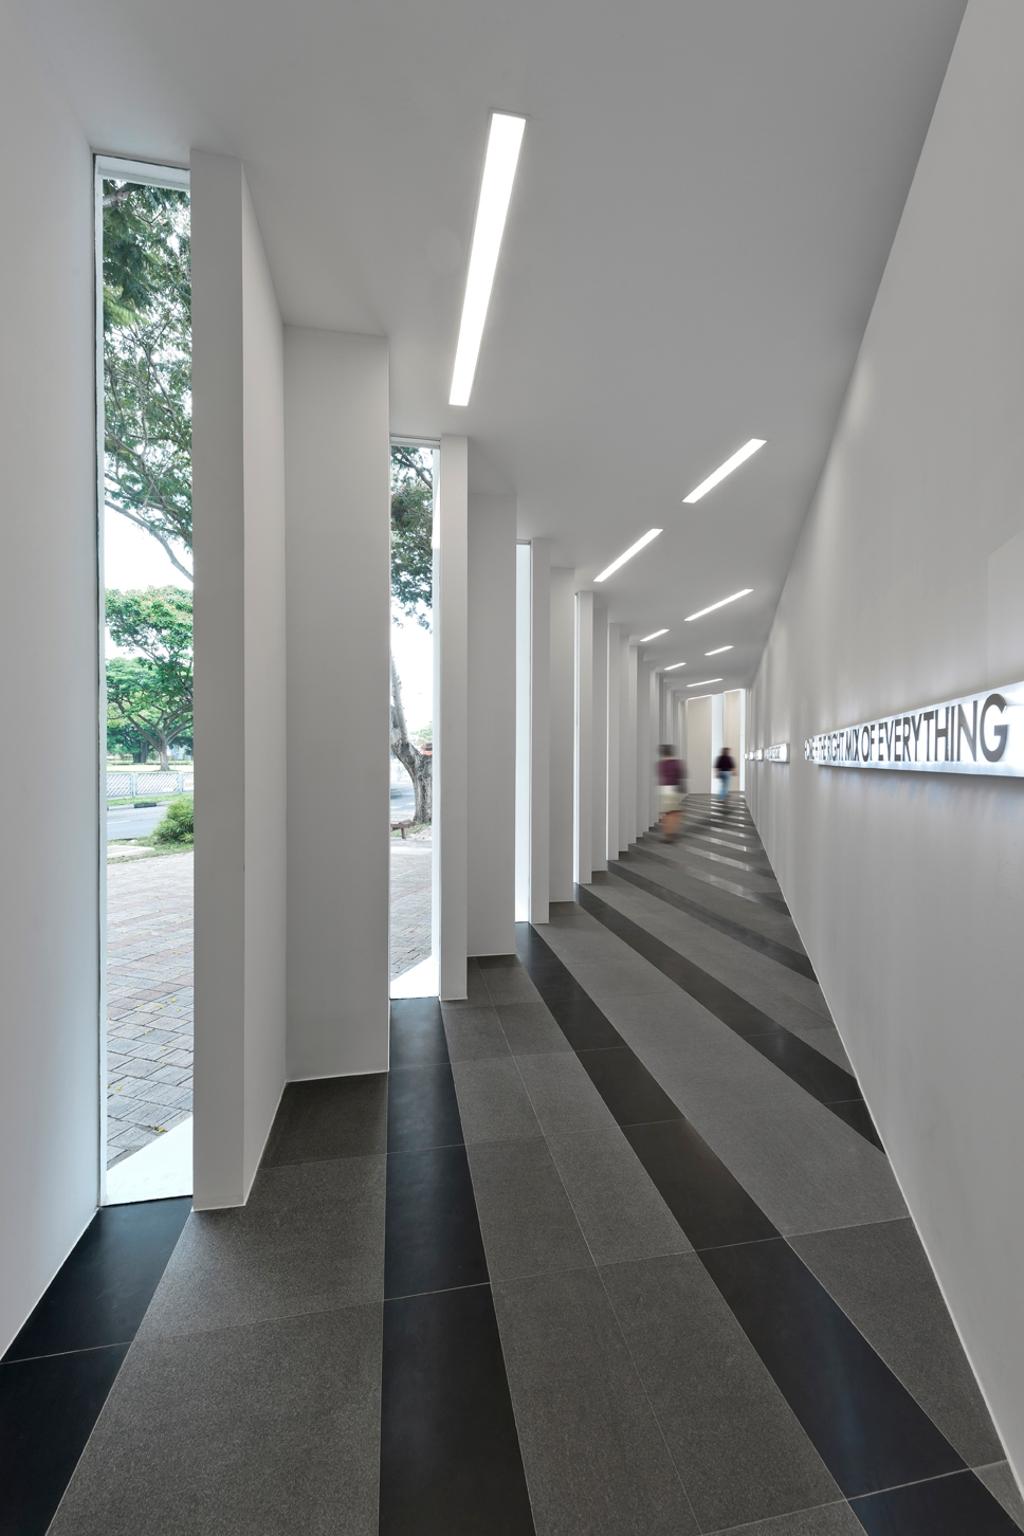 UOL Edge, Commercial, Architect, Ministry of Design, Modern, Pillars, White Ceiling, Ceiling Light, White Pillars, Grey Floor, Corridor